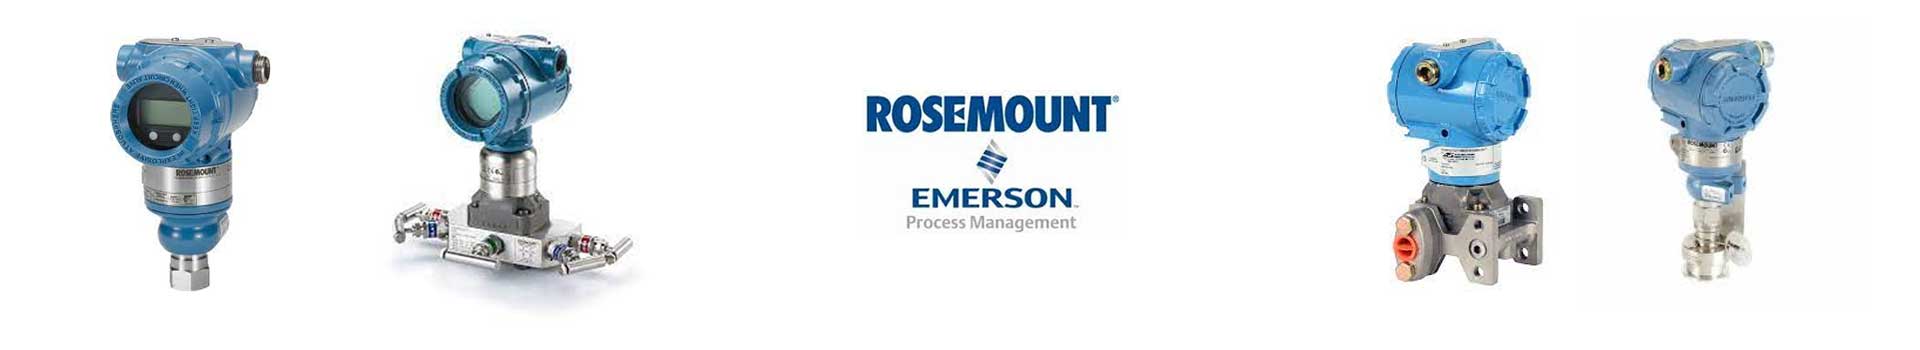 罗斯蒙特Rosemount压力变送器